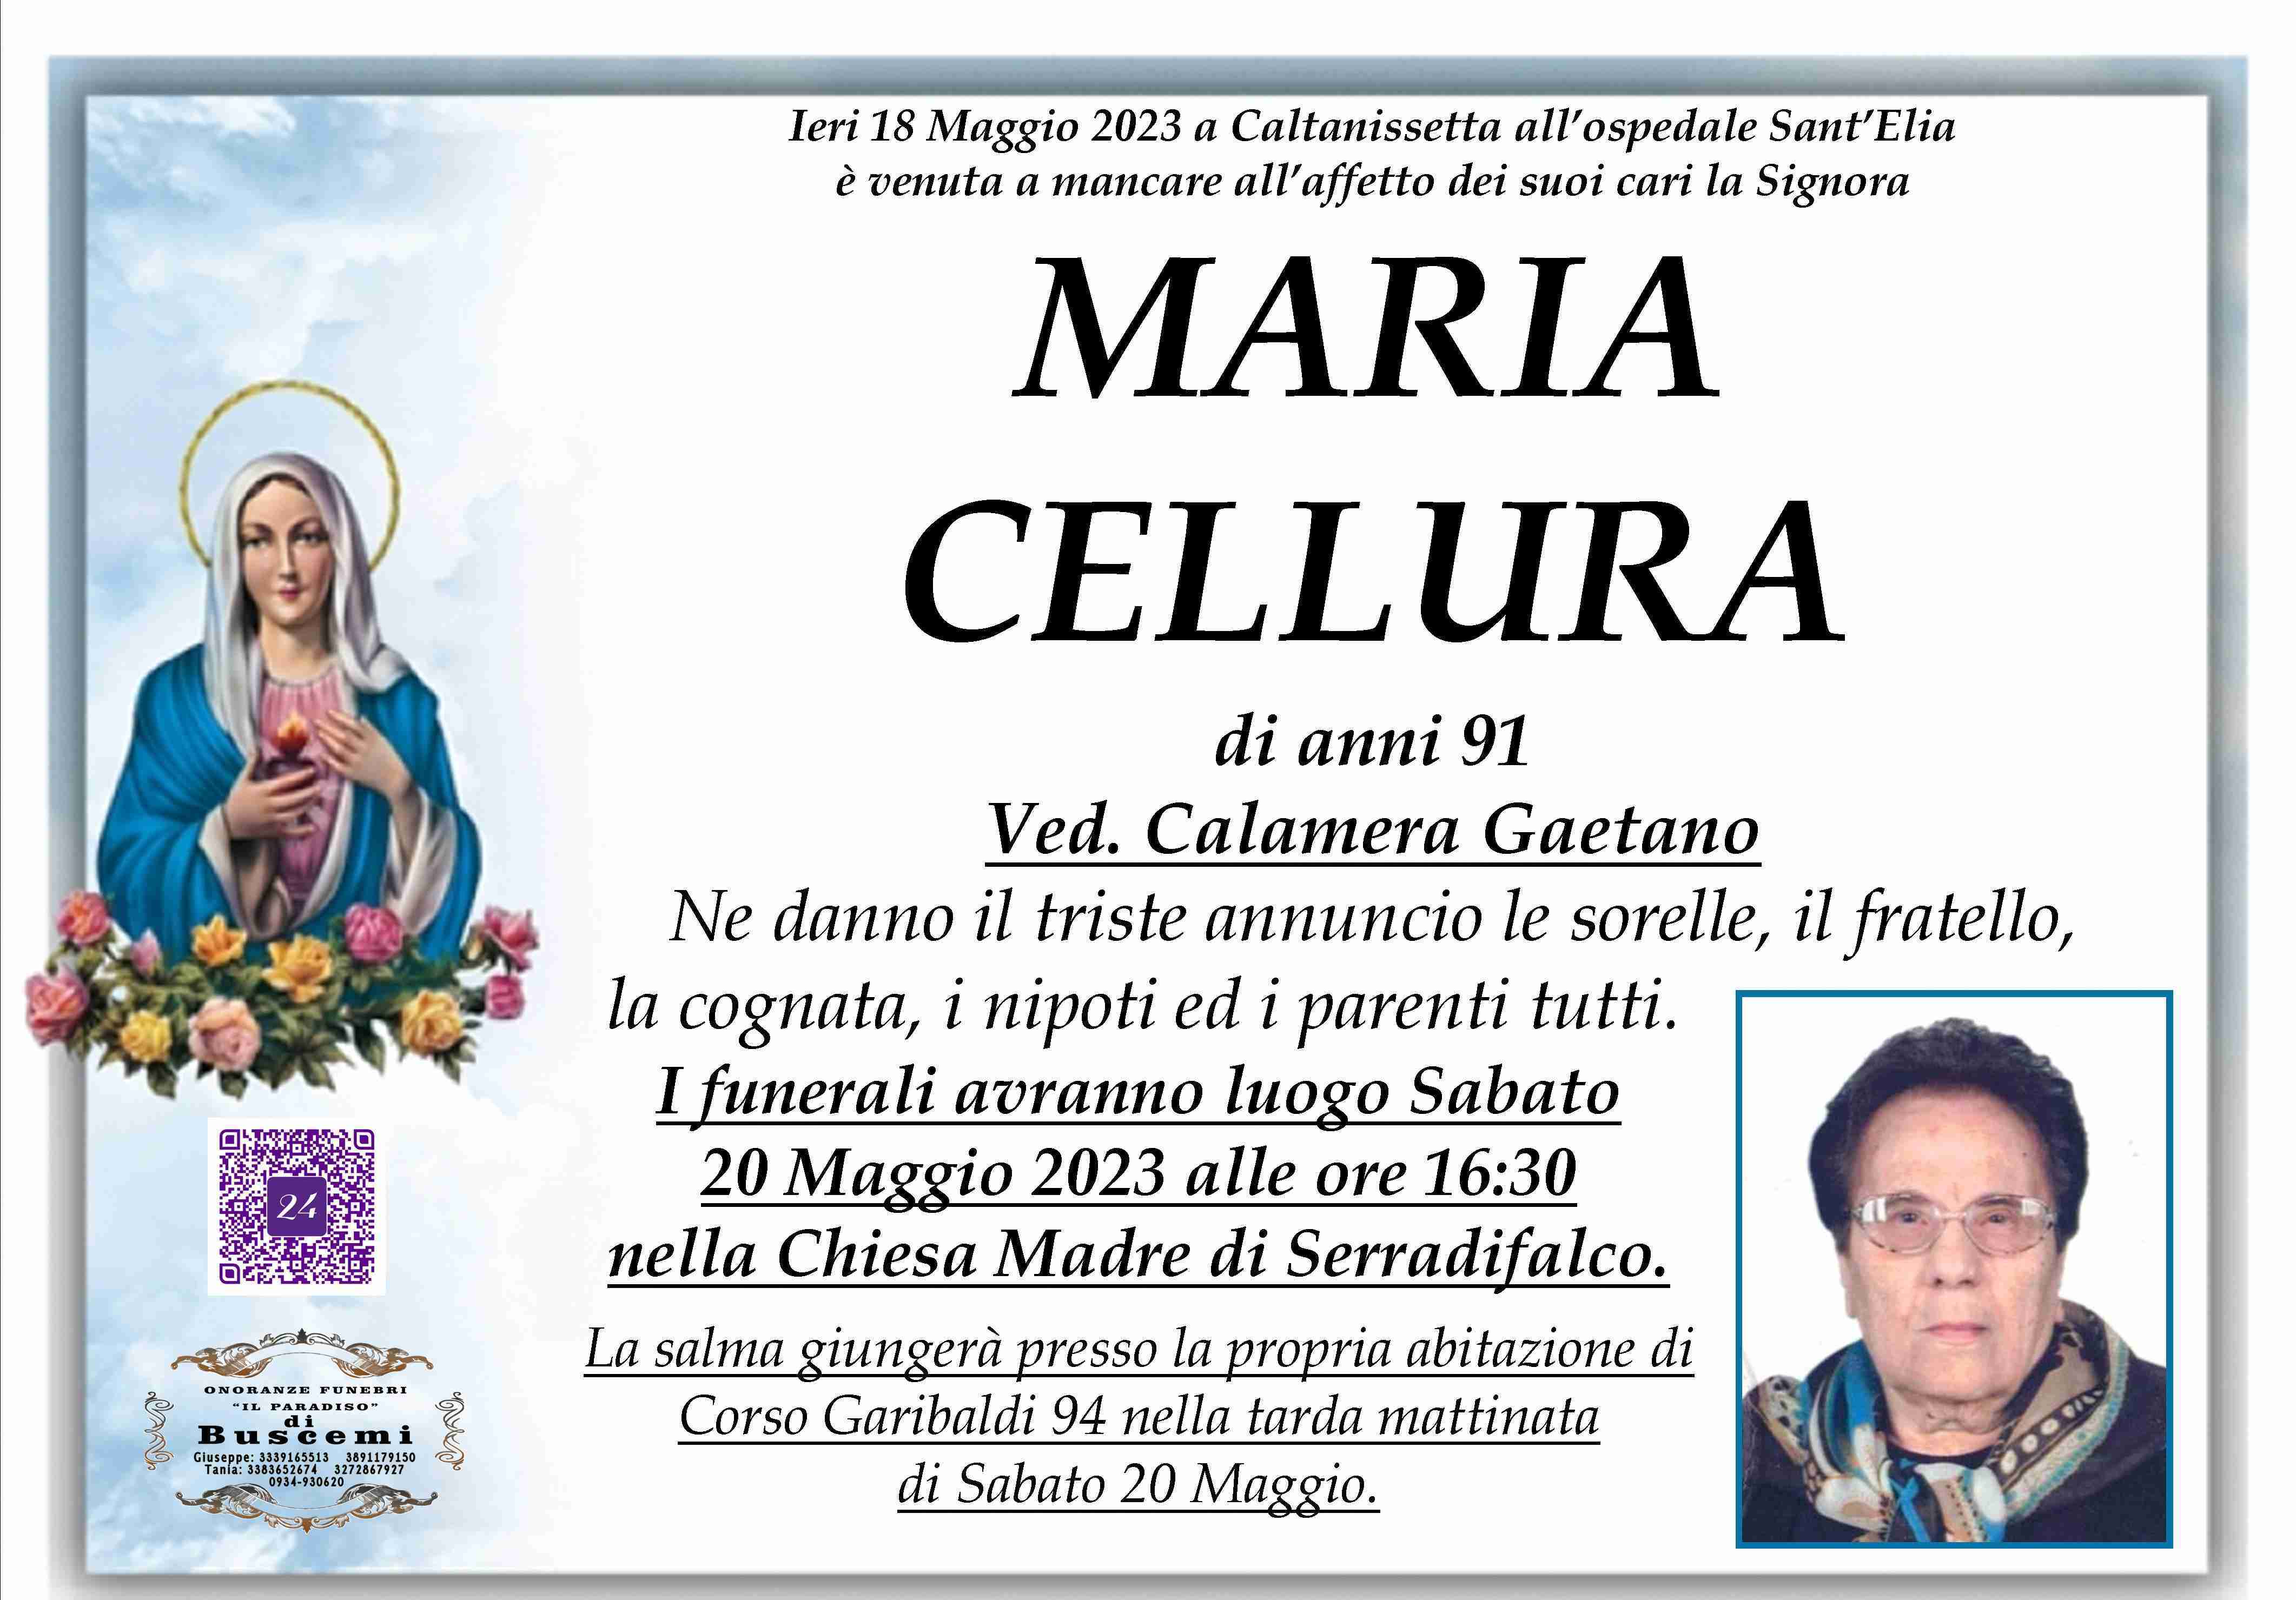 Maria Cellura